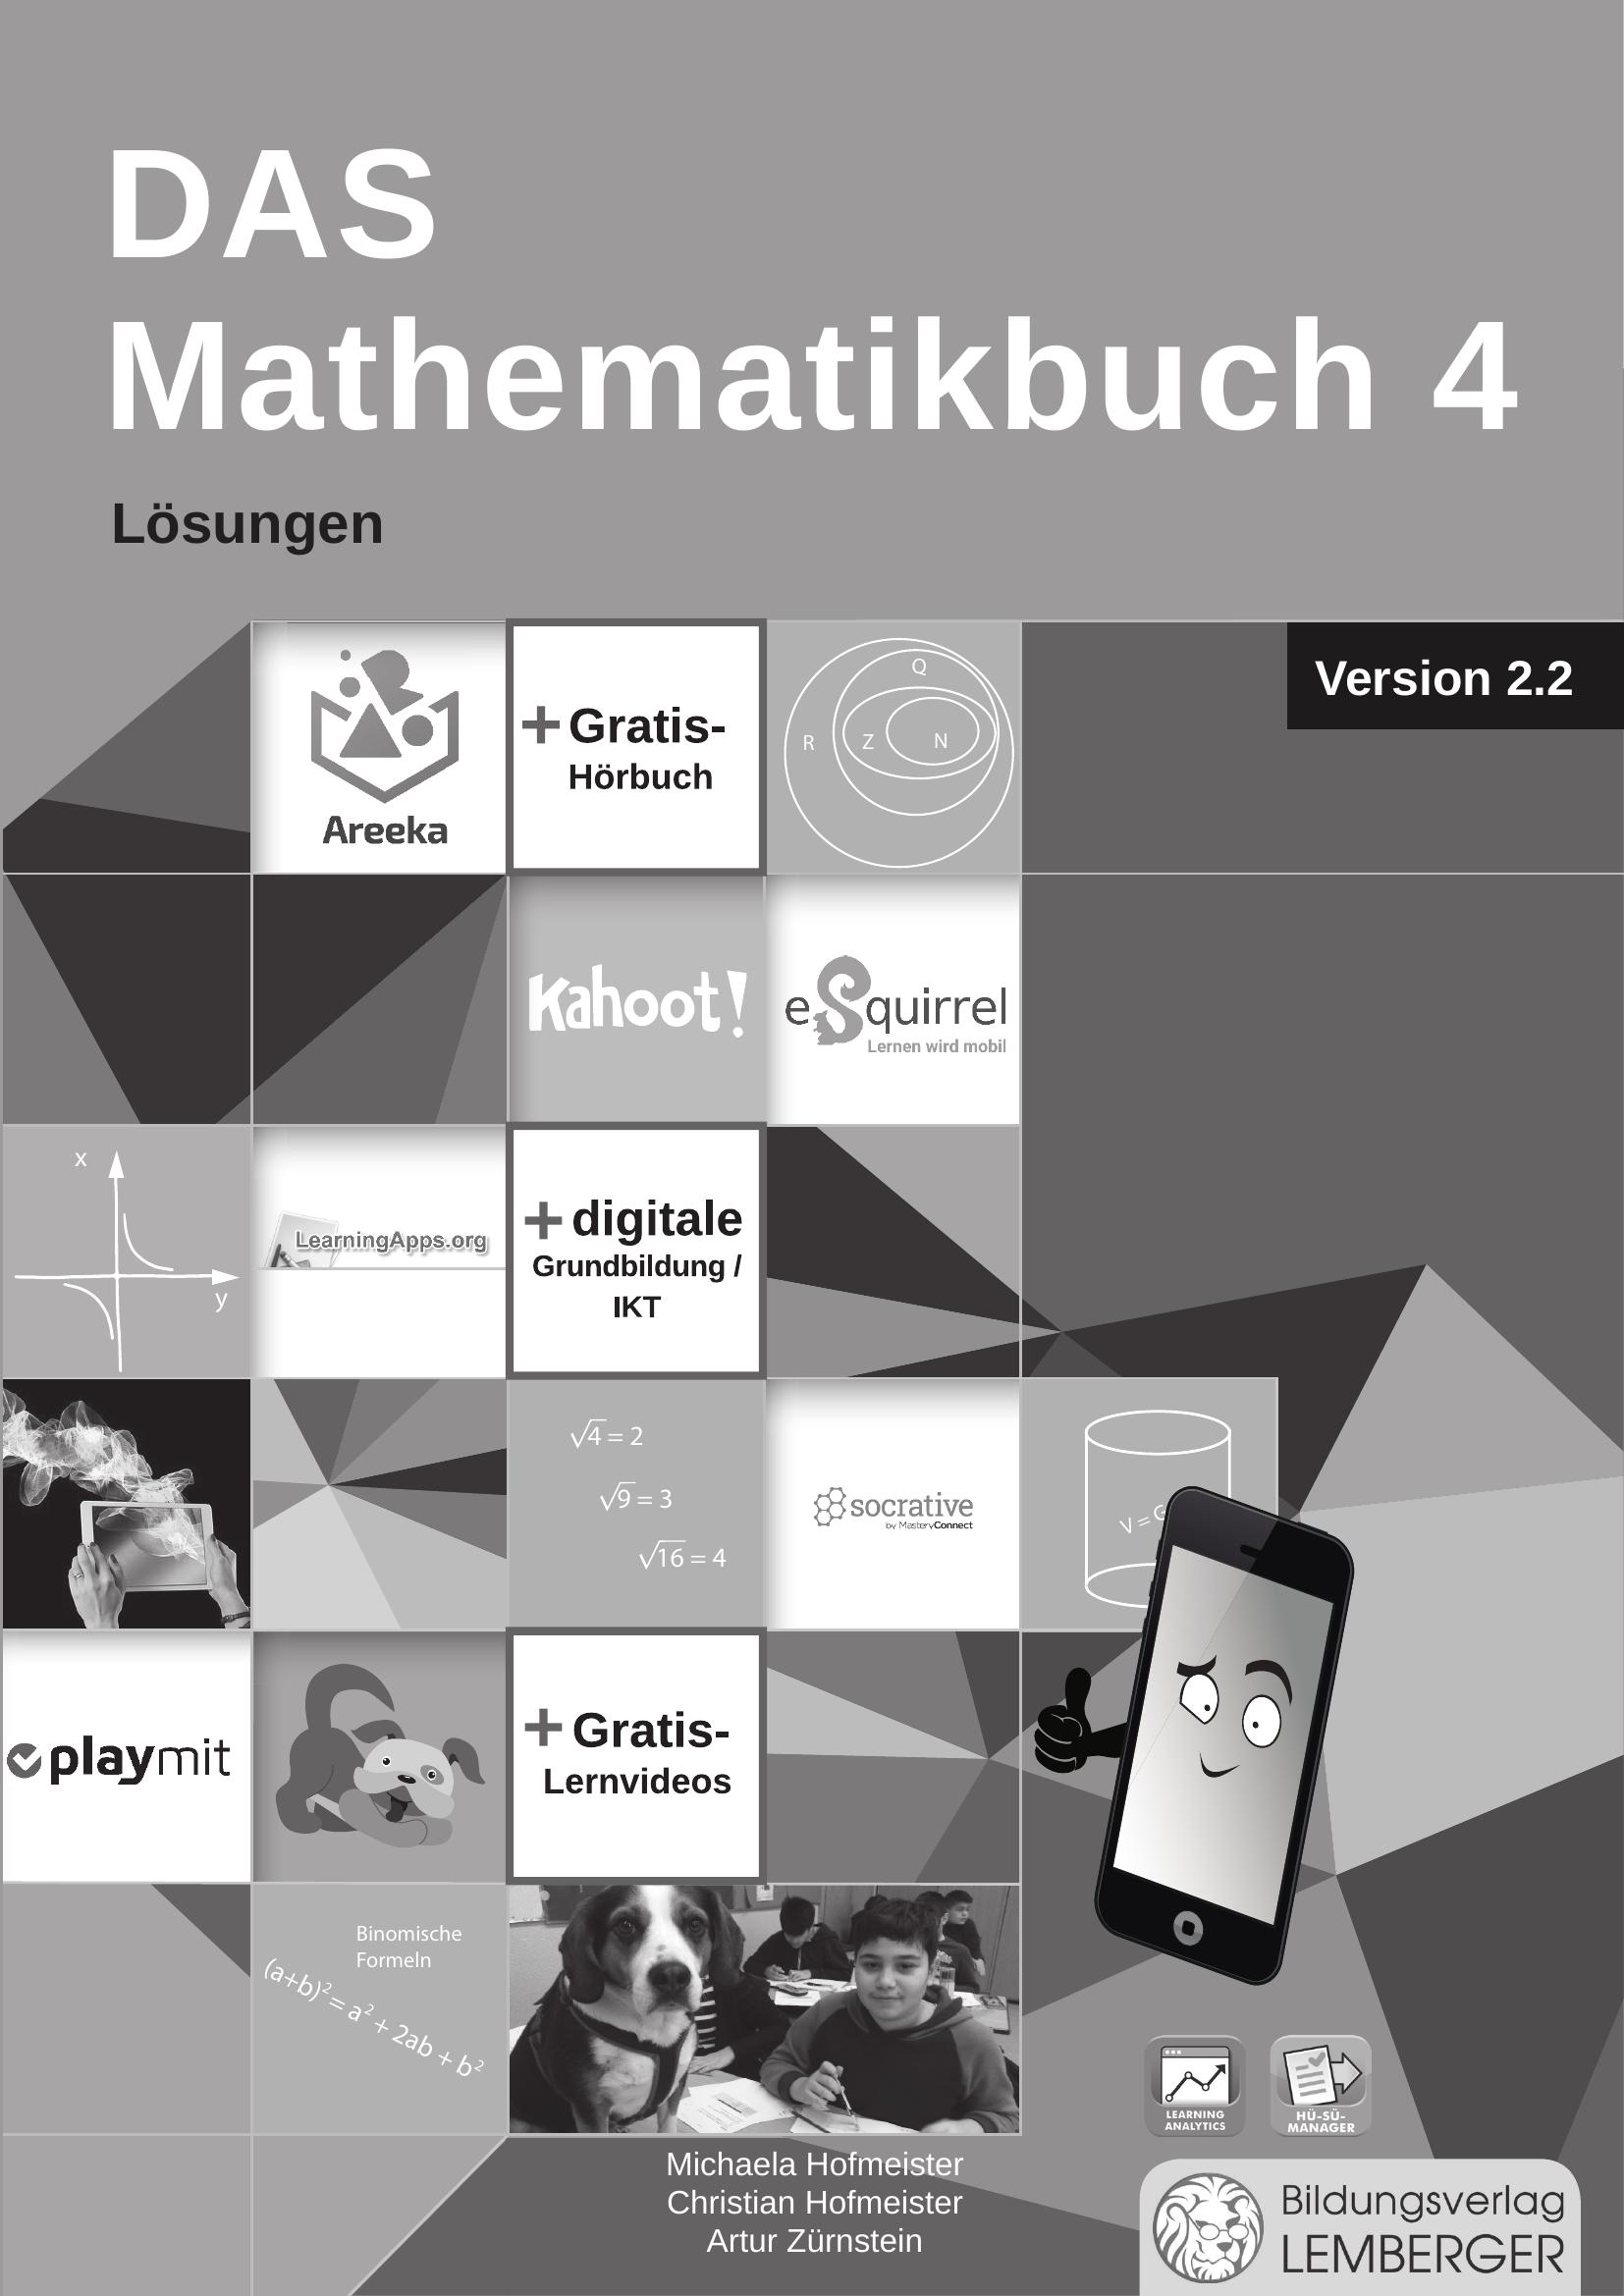 DAS Mathematikbuch 4 - Schulbuch IKT_Version 2.2 - Lösungen